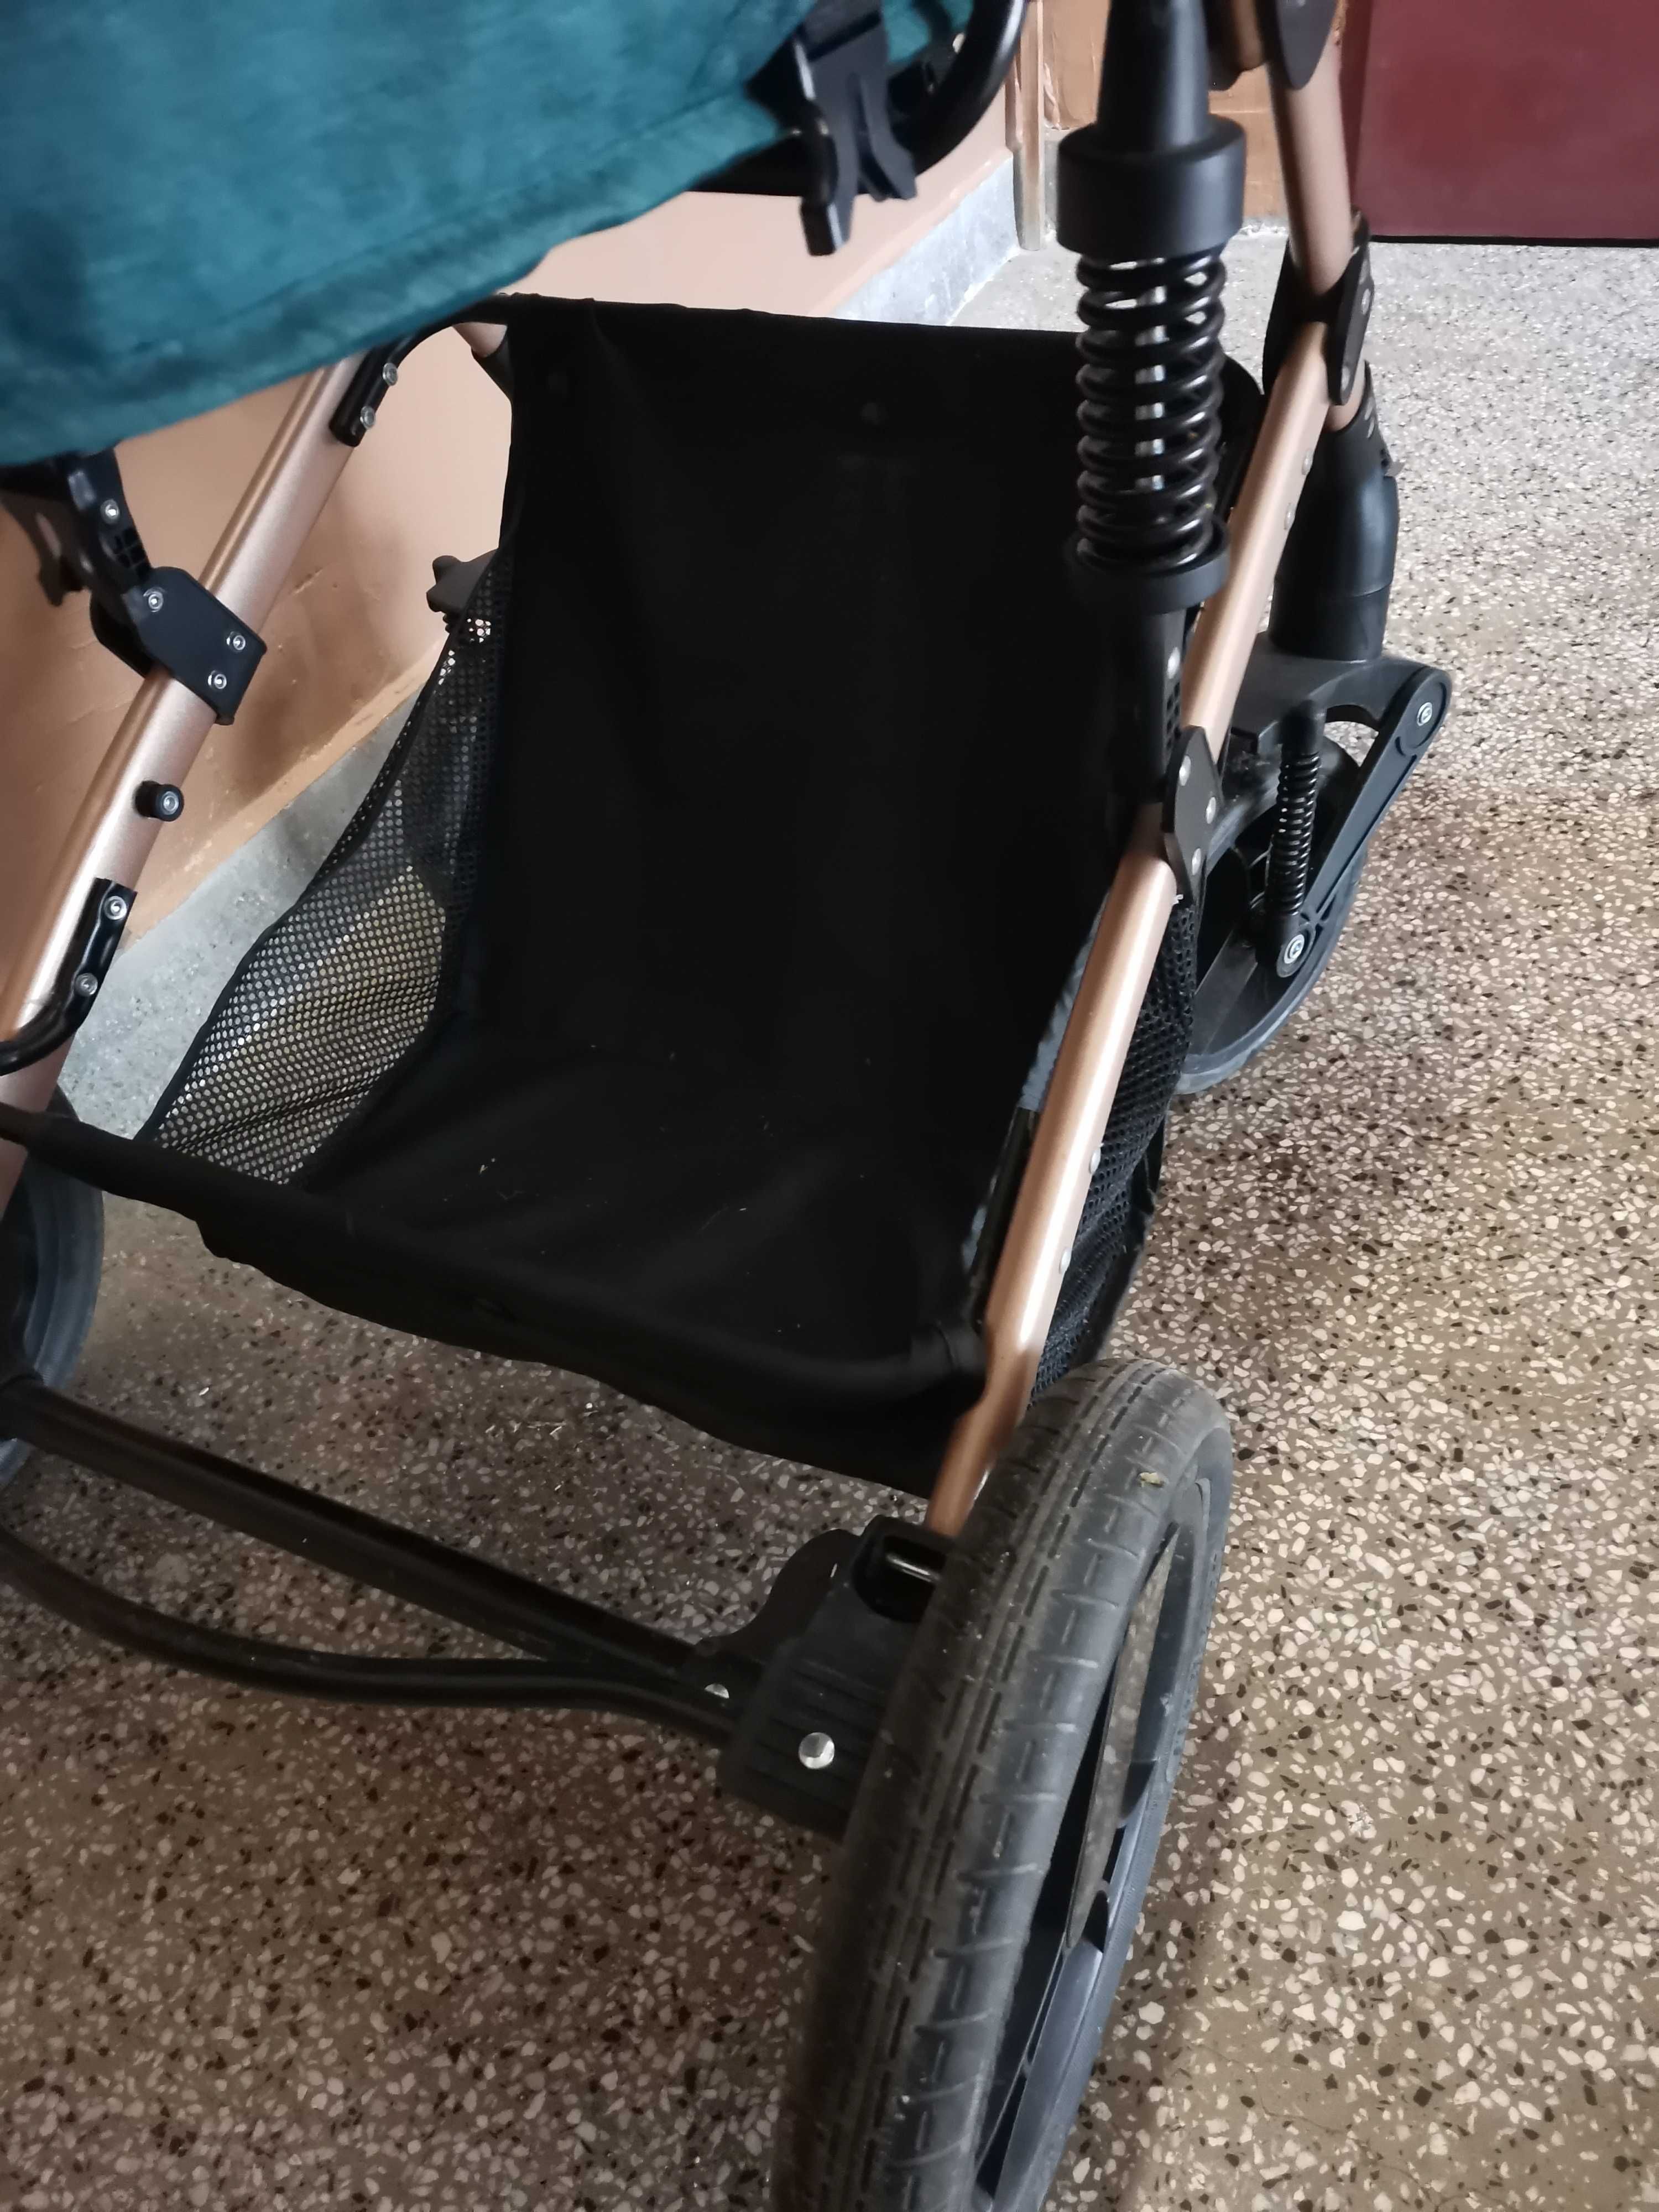 Детска количка  Chipolino Camea